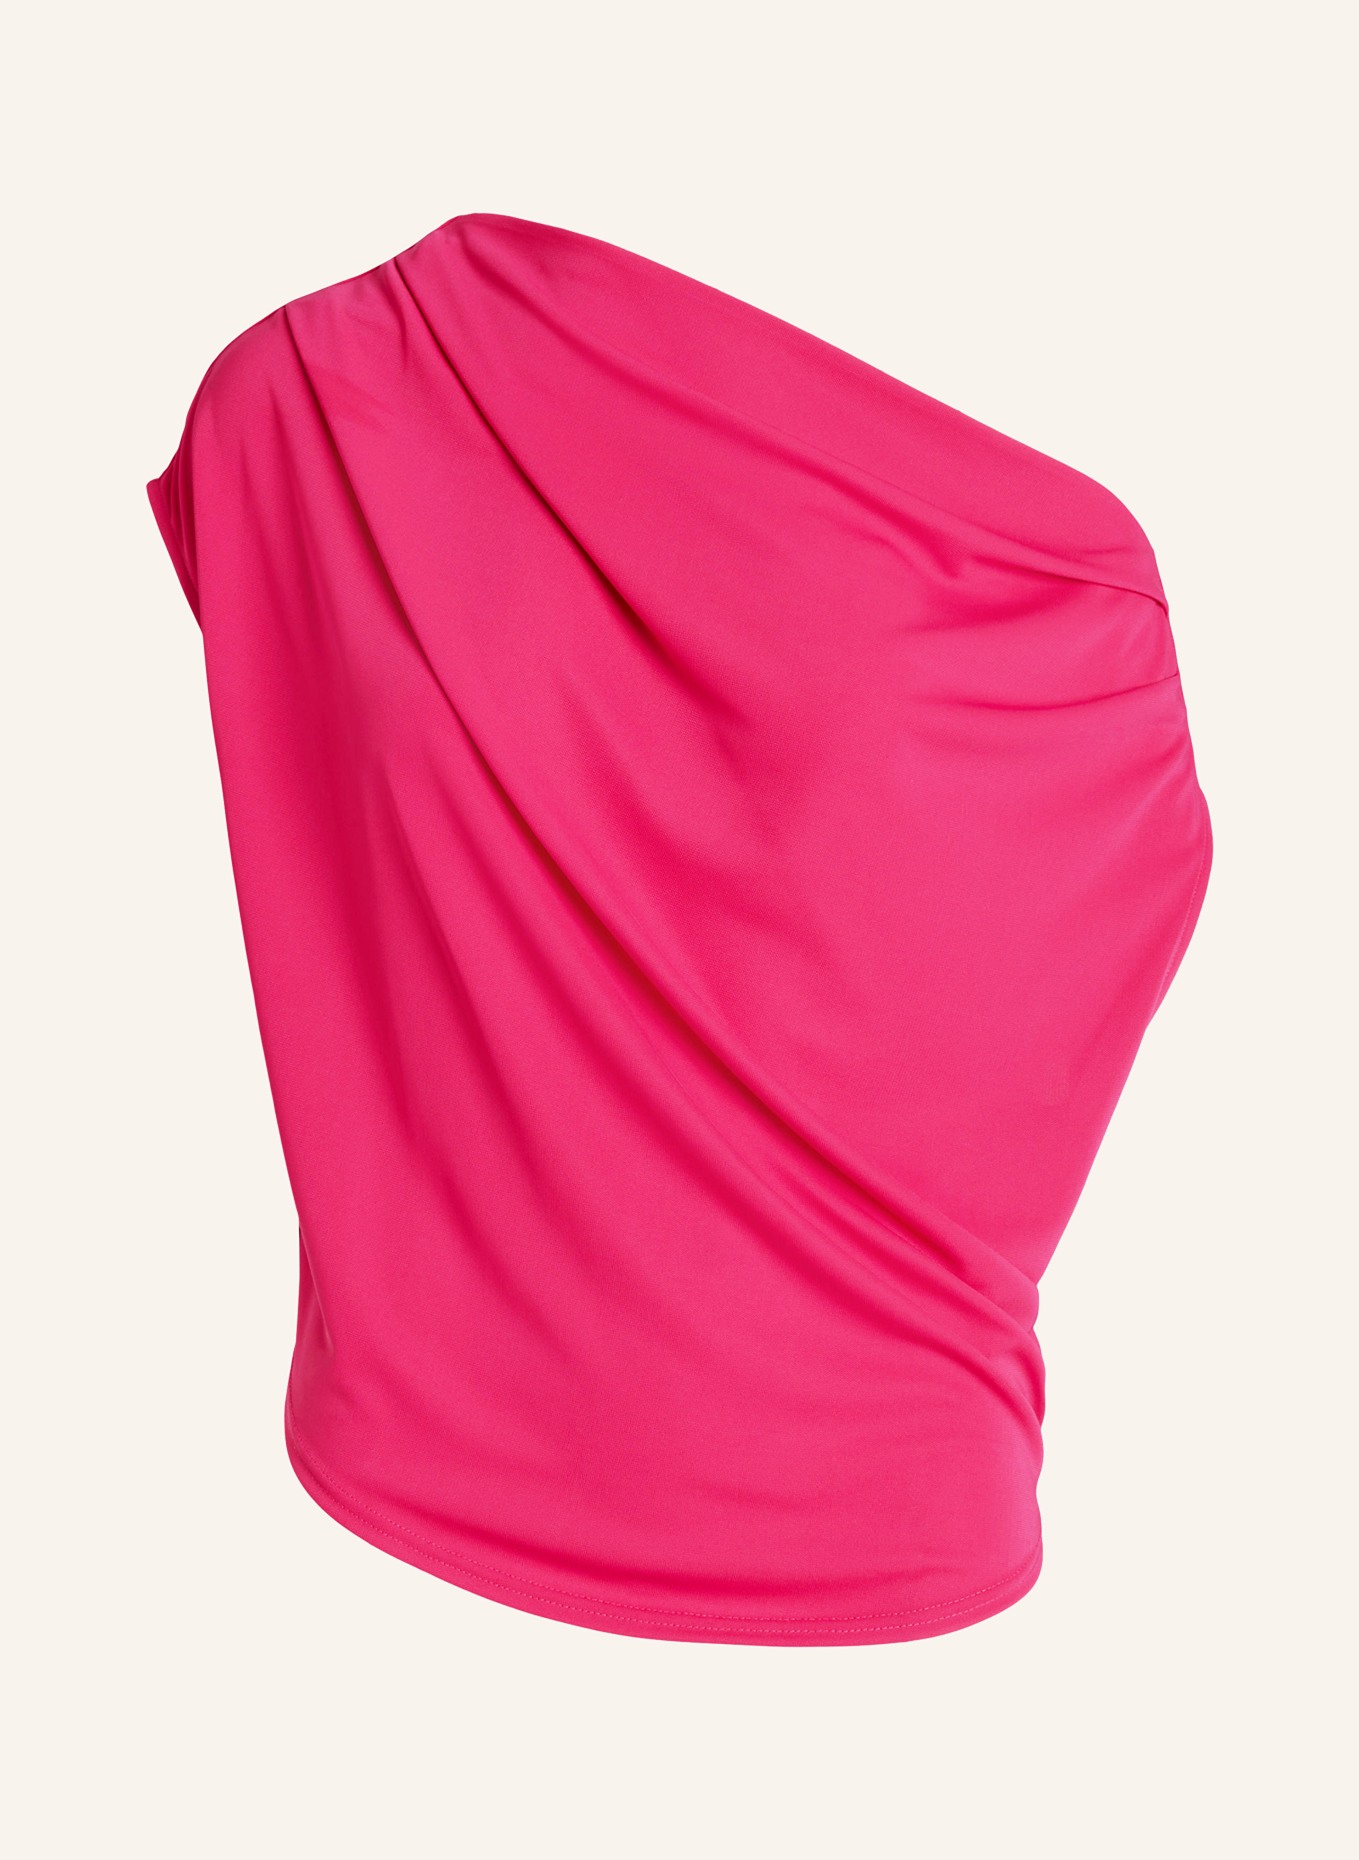 LAUREN RALPH LAUREN One-shoulder top, Color: PINK (Image 1)